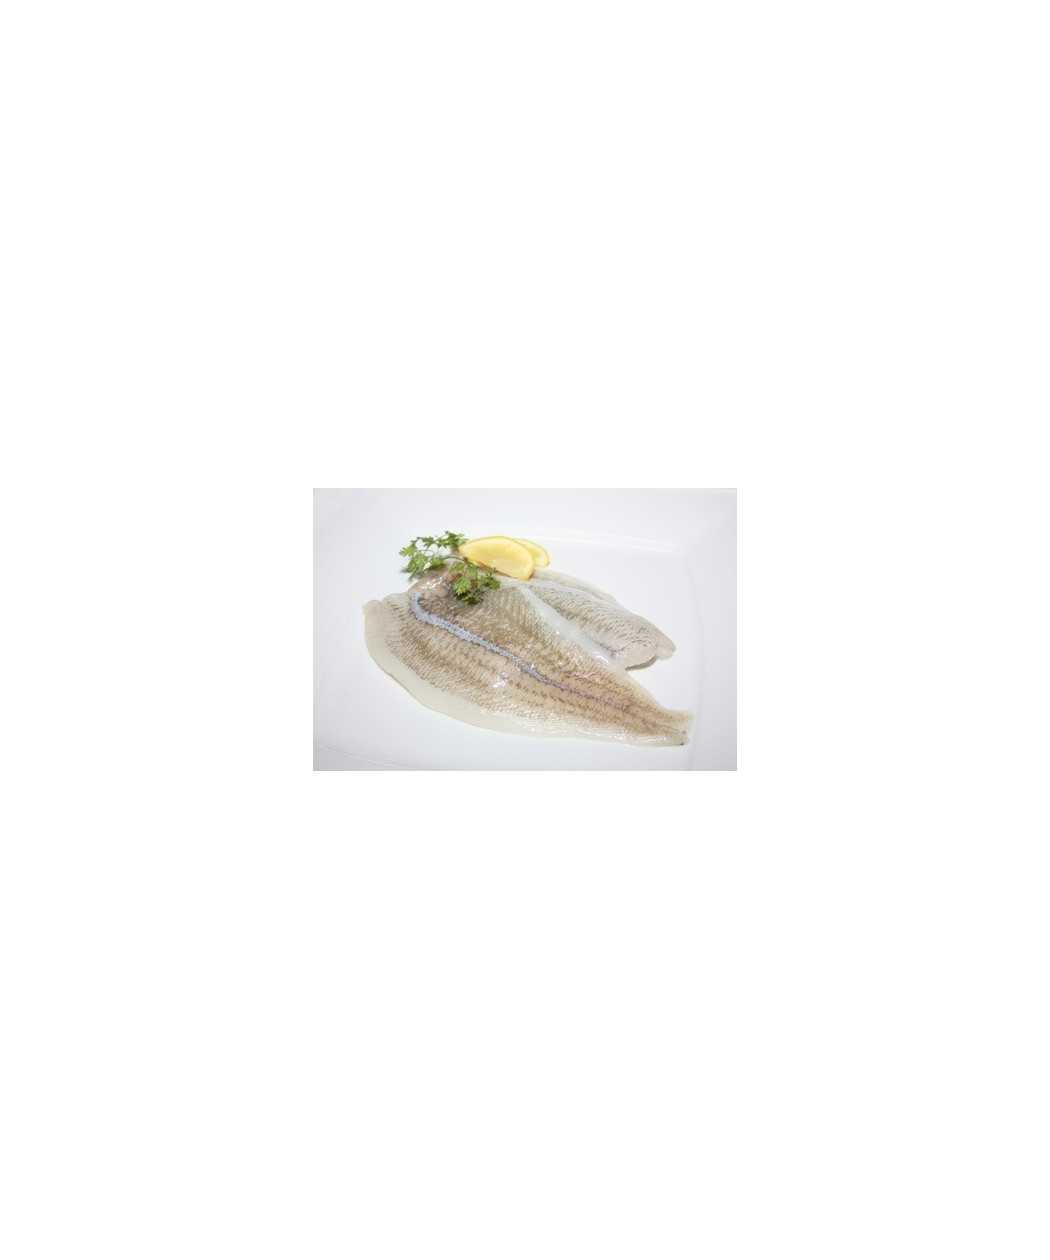 Filet de carrelet lot de 1 kg (Pleuronectes platessa)